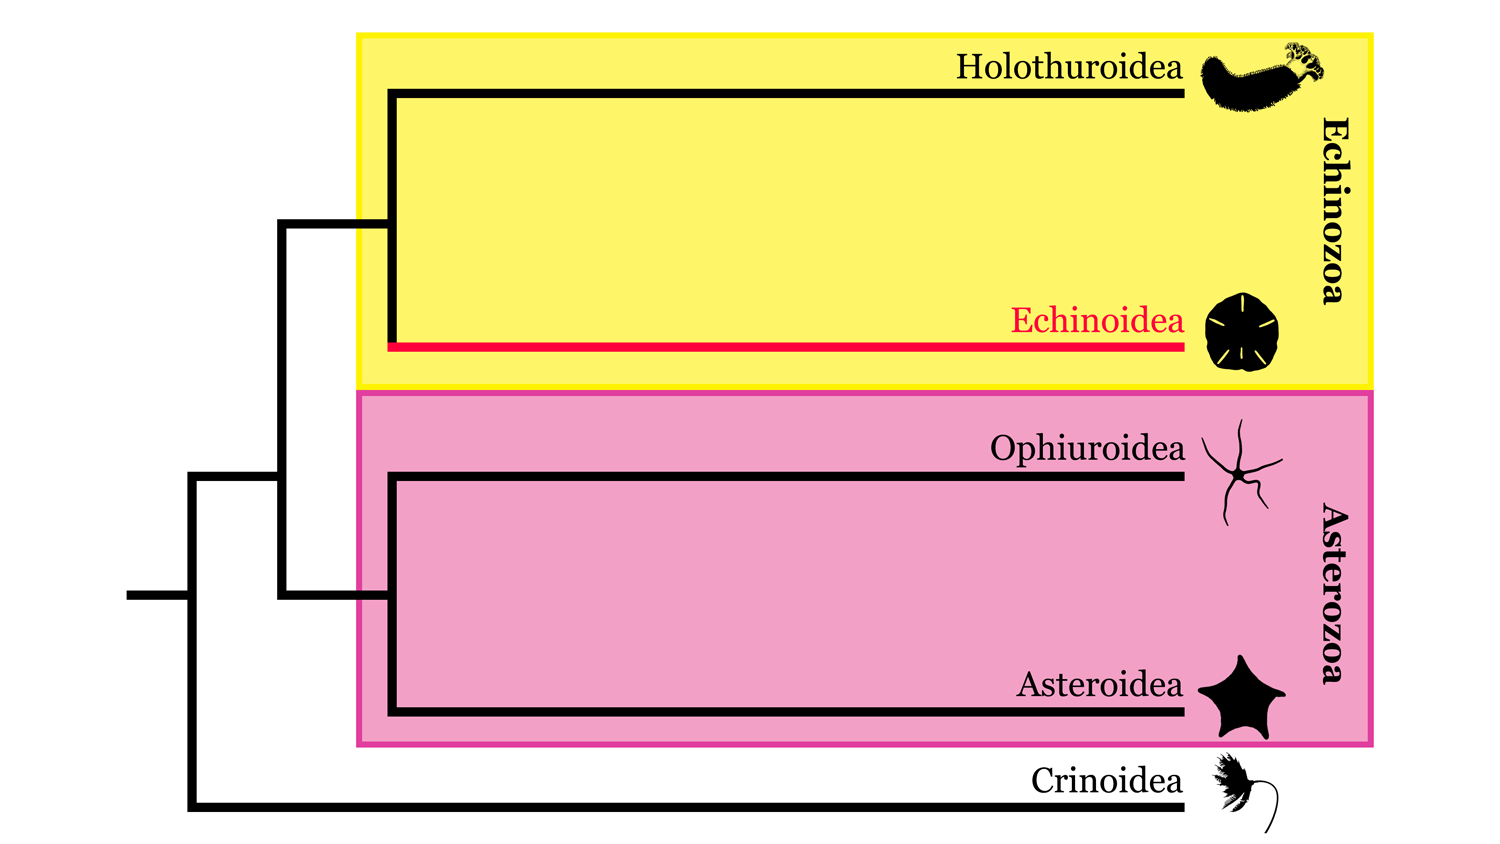 Image of Echinodermata phylogeny, highlighting where Echinoidea sits